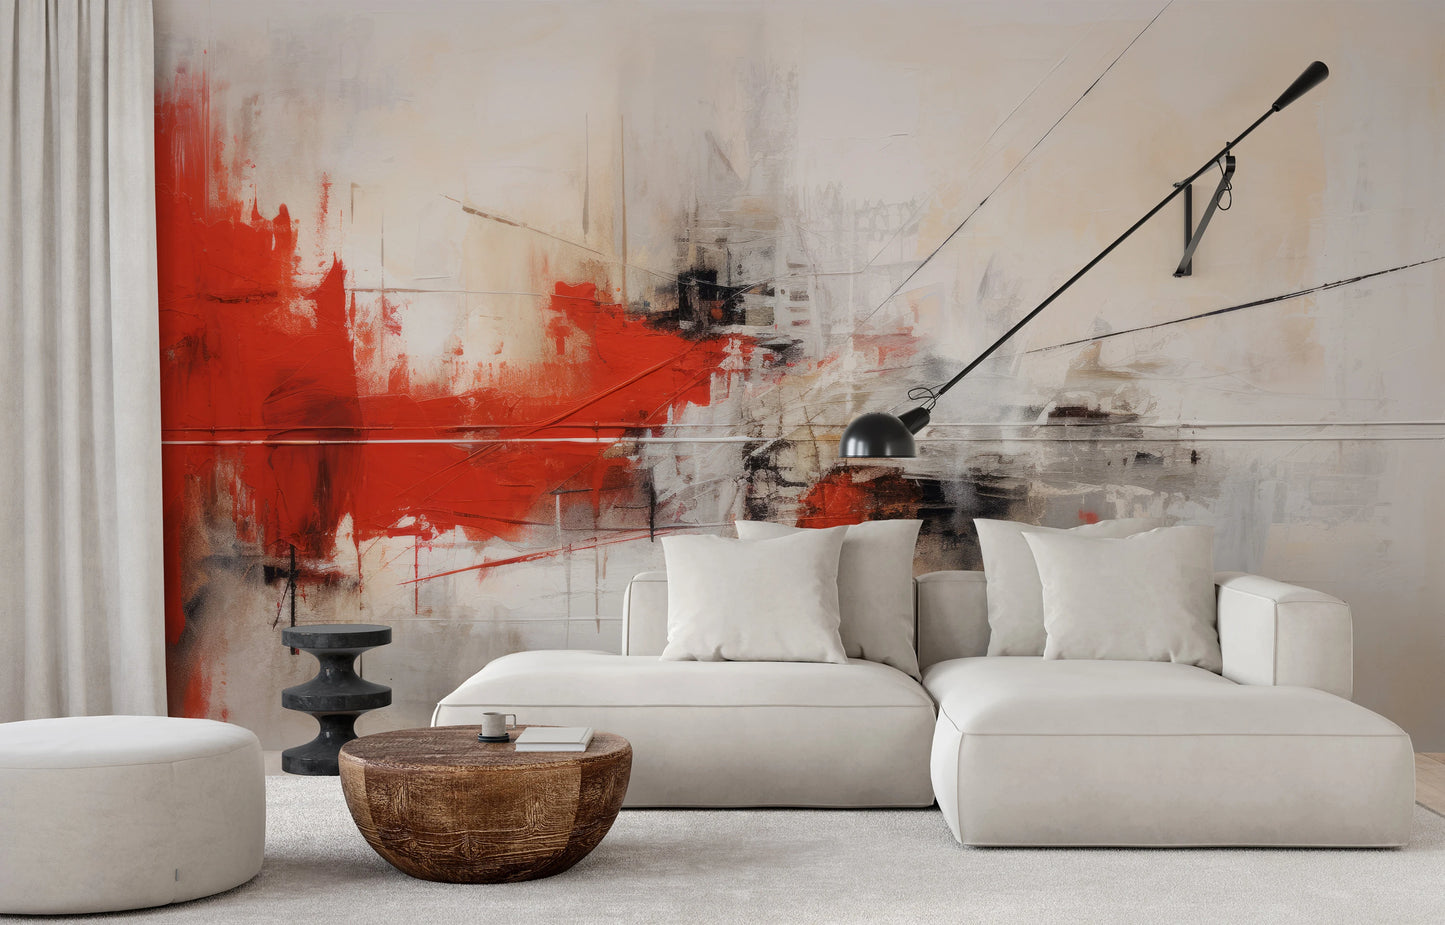 Wzór fototapety malowanej o nazwie Dynamic Red Abstraction pokazanej w aranżacji wnętrza.